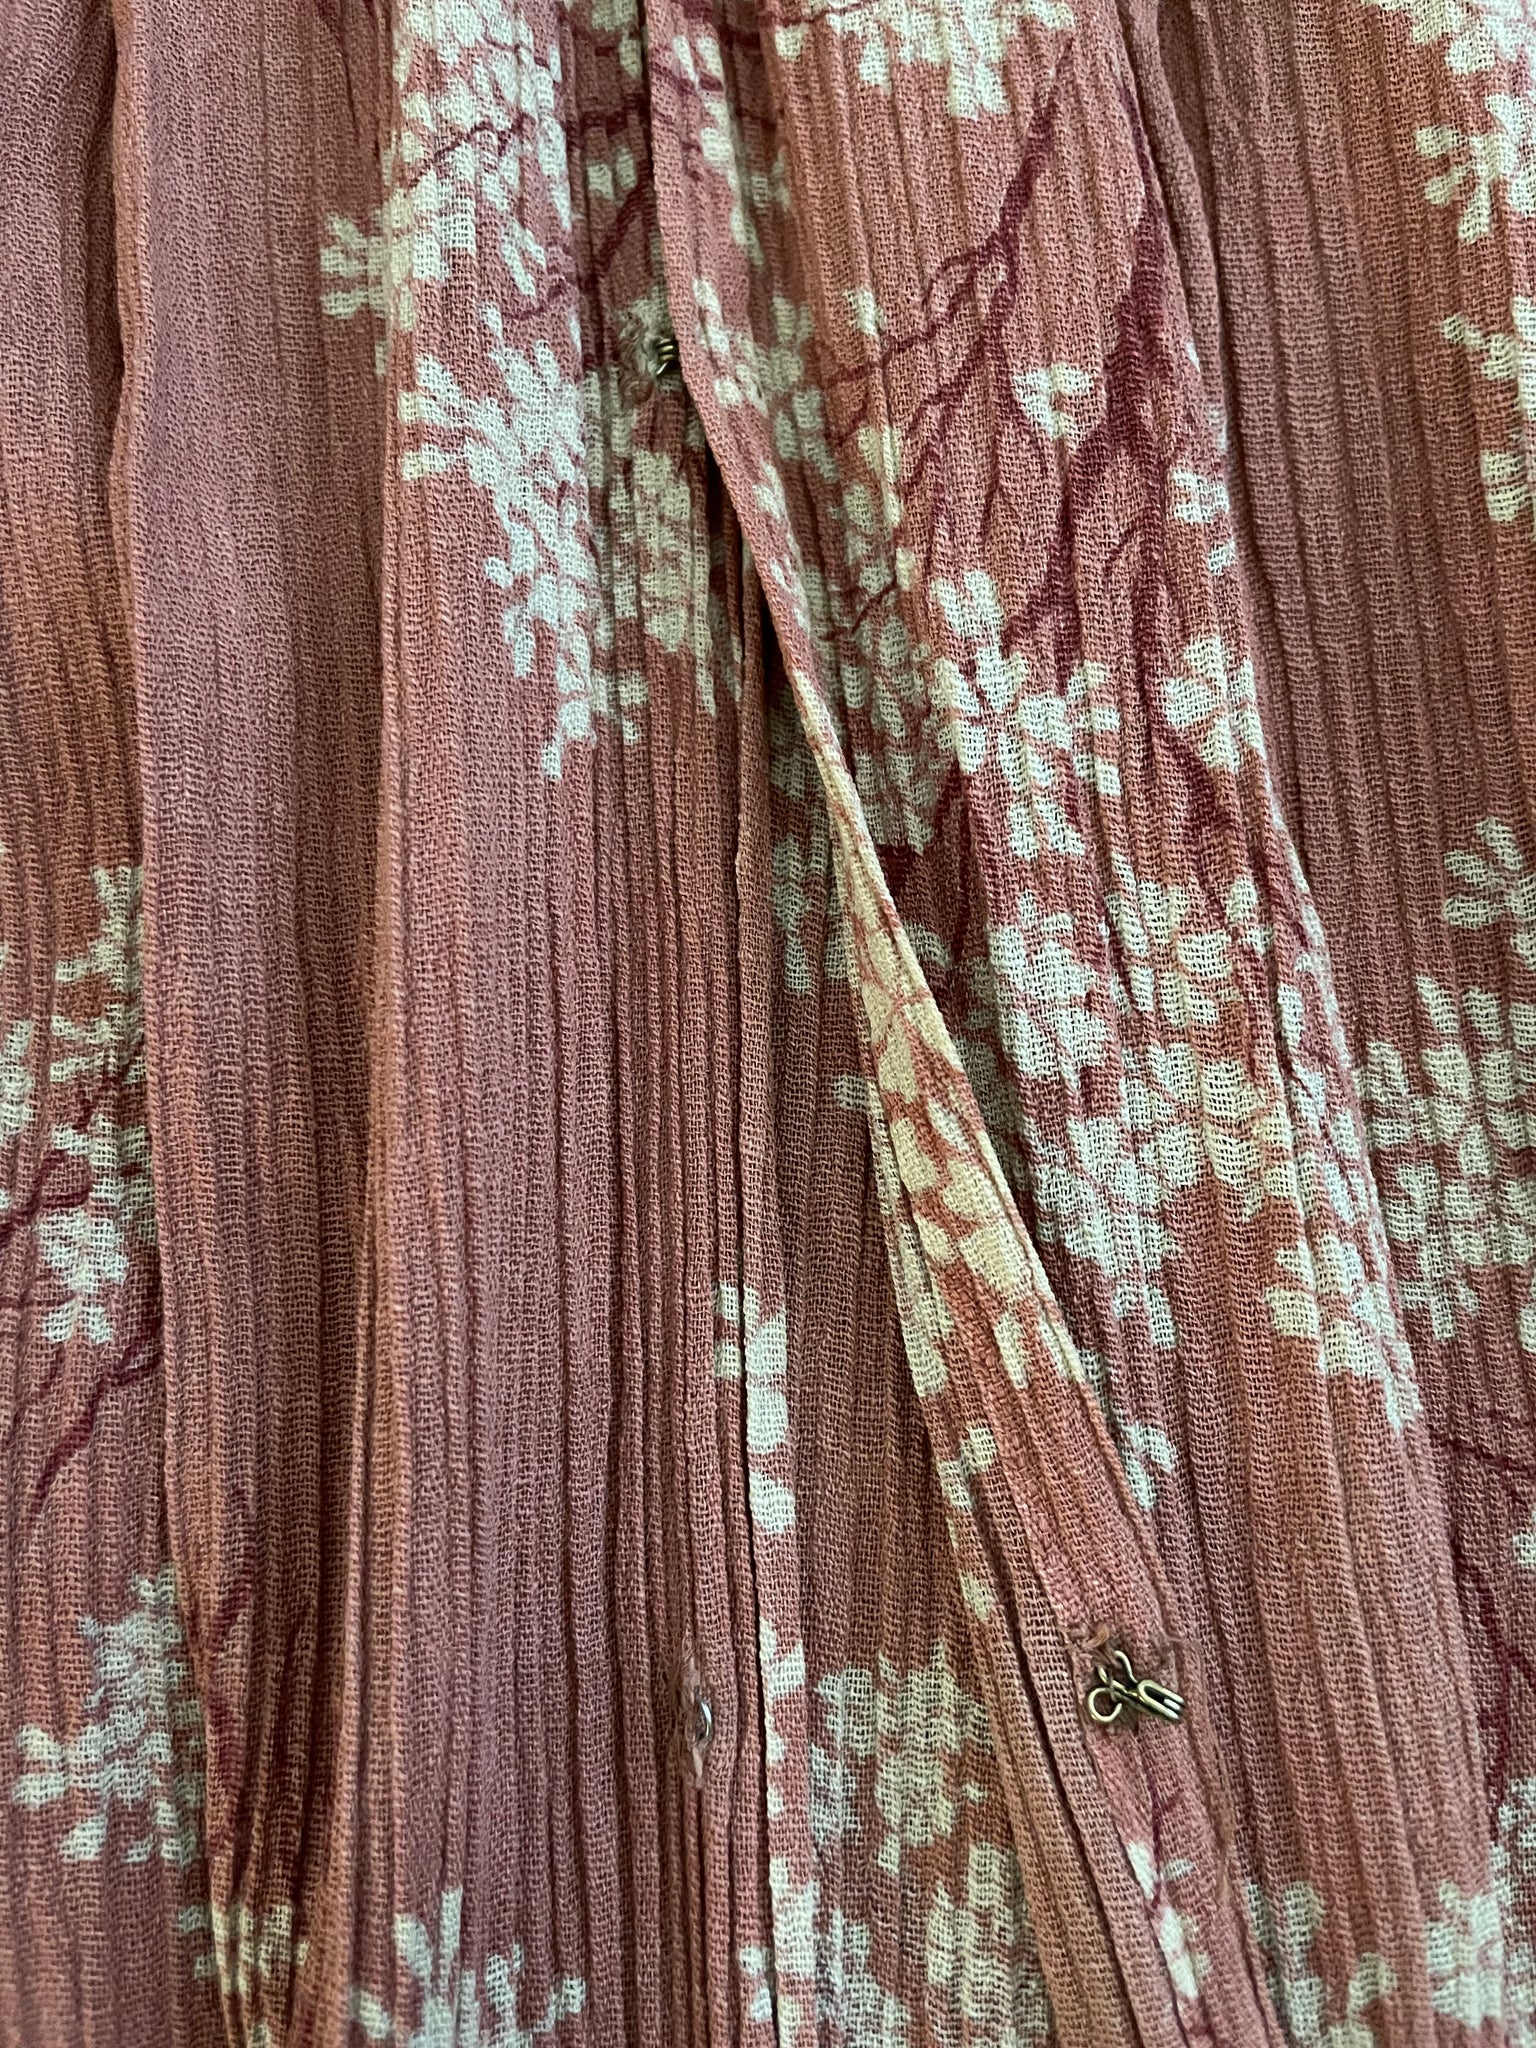 Edwardian Cherry Blossoms Gauze Negligee Dress